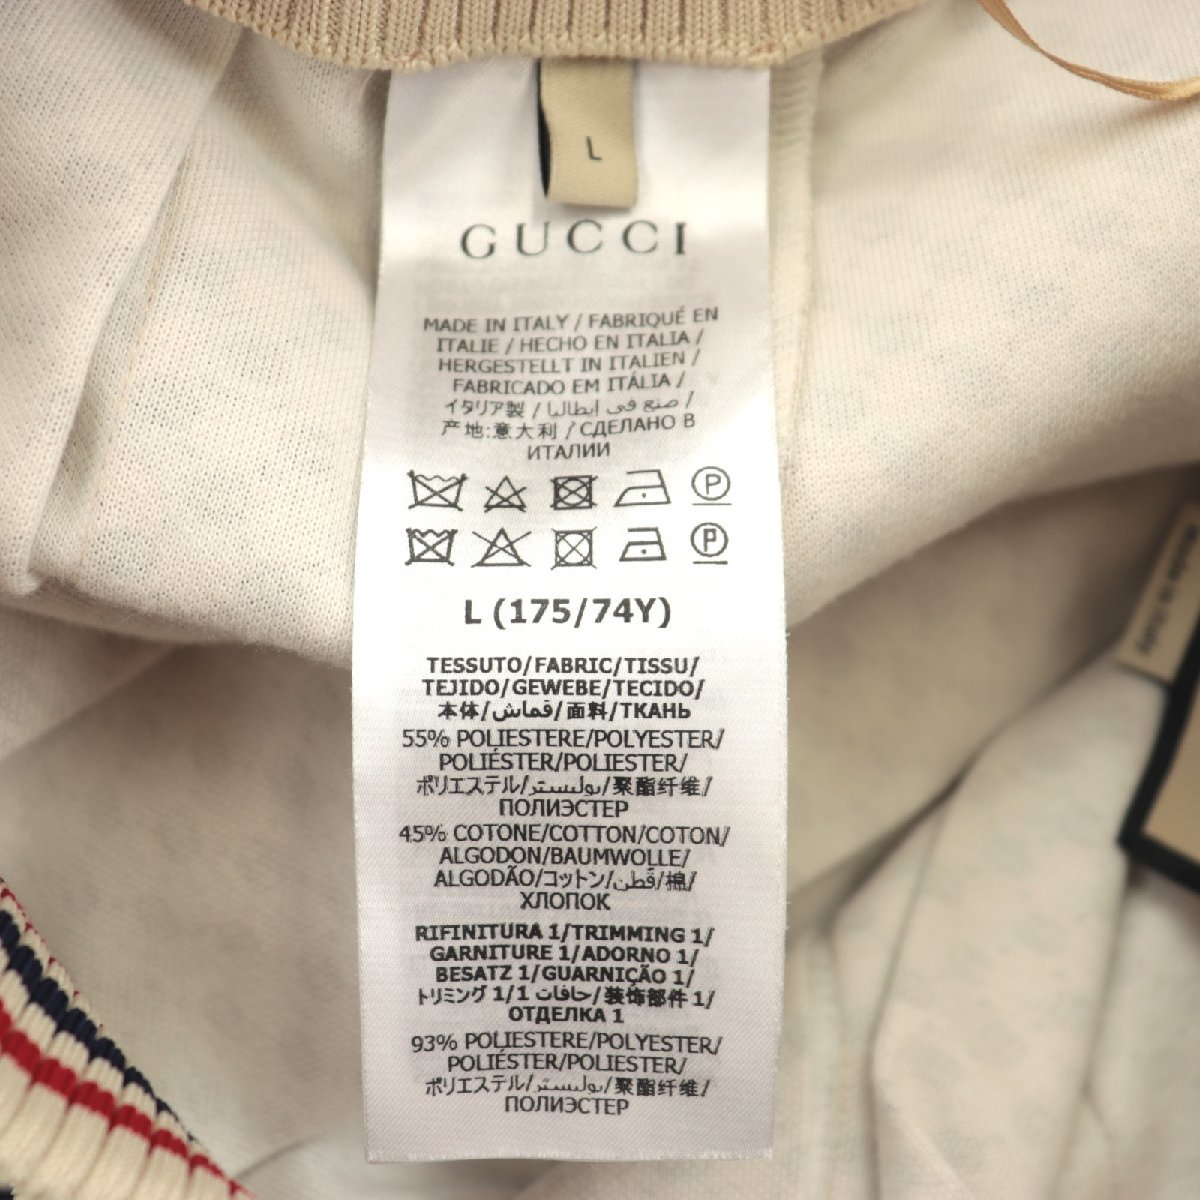  прекрасный товар Gucci Inter locking Logo общий рисунок плиссировать длинная юбка женский бежевый L Sherry линия GG хлопок GUCCI